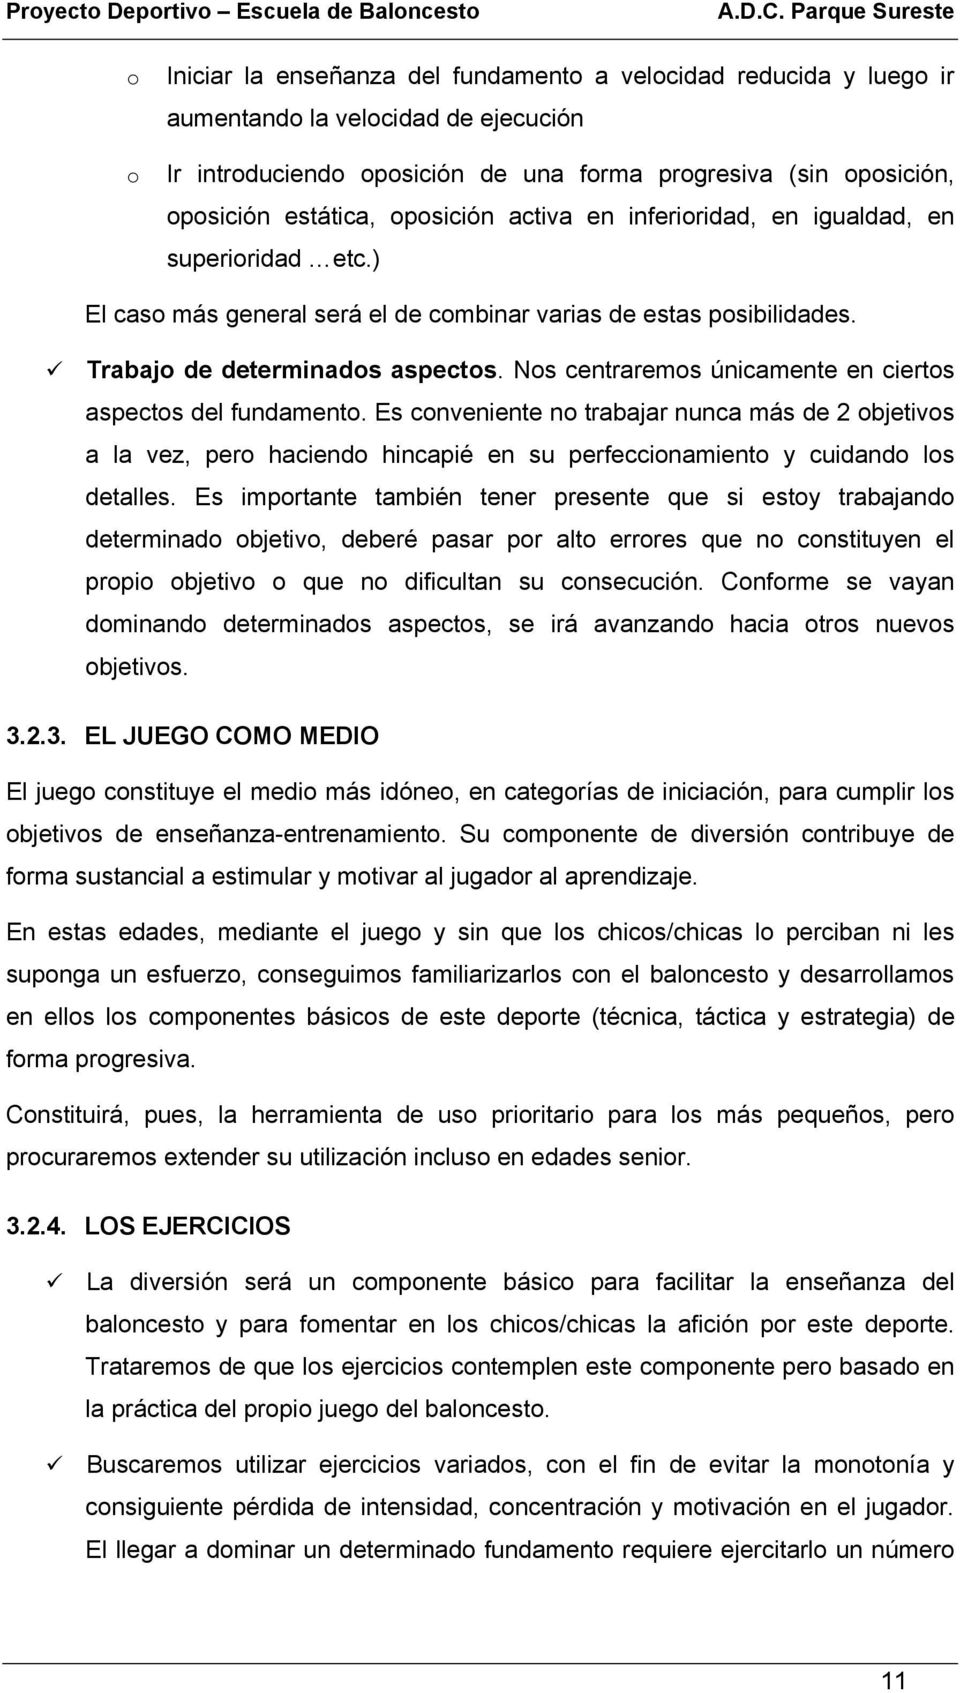 PROYECTO DEPORTIVO ESCUELA DE BALONCESTO - PDF Free Download